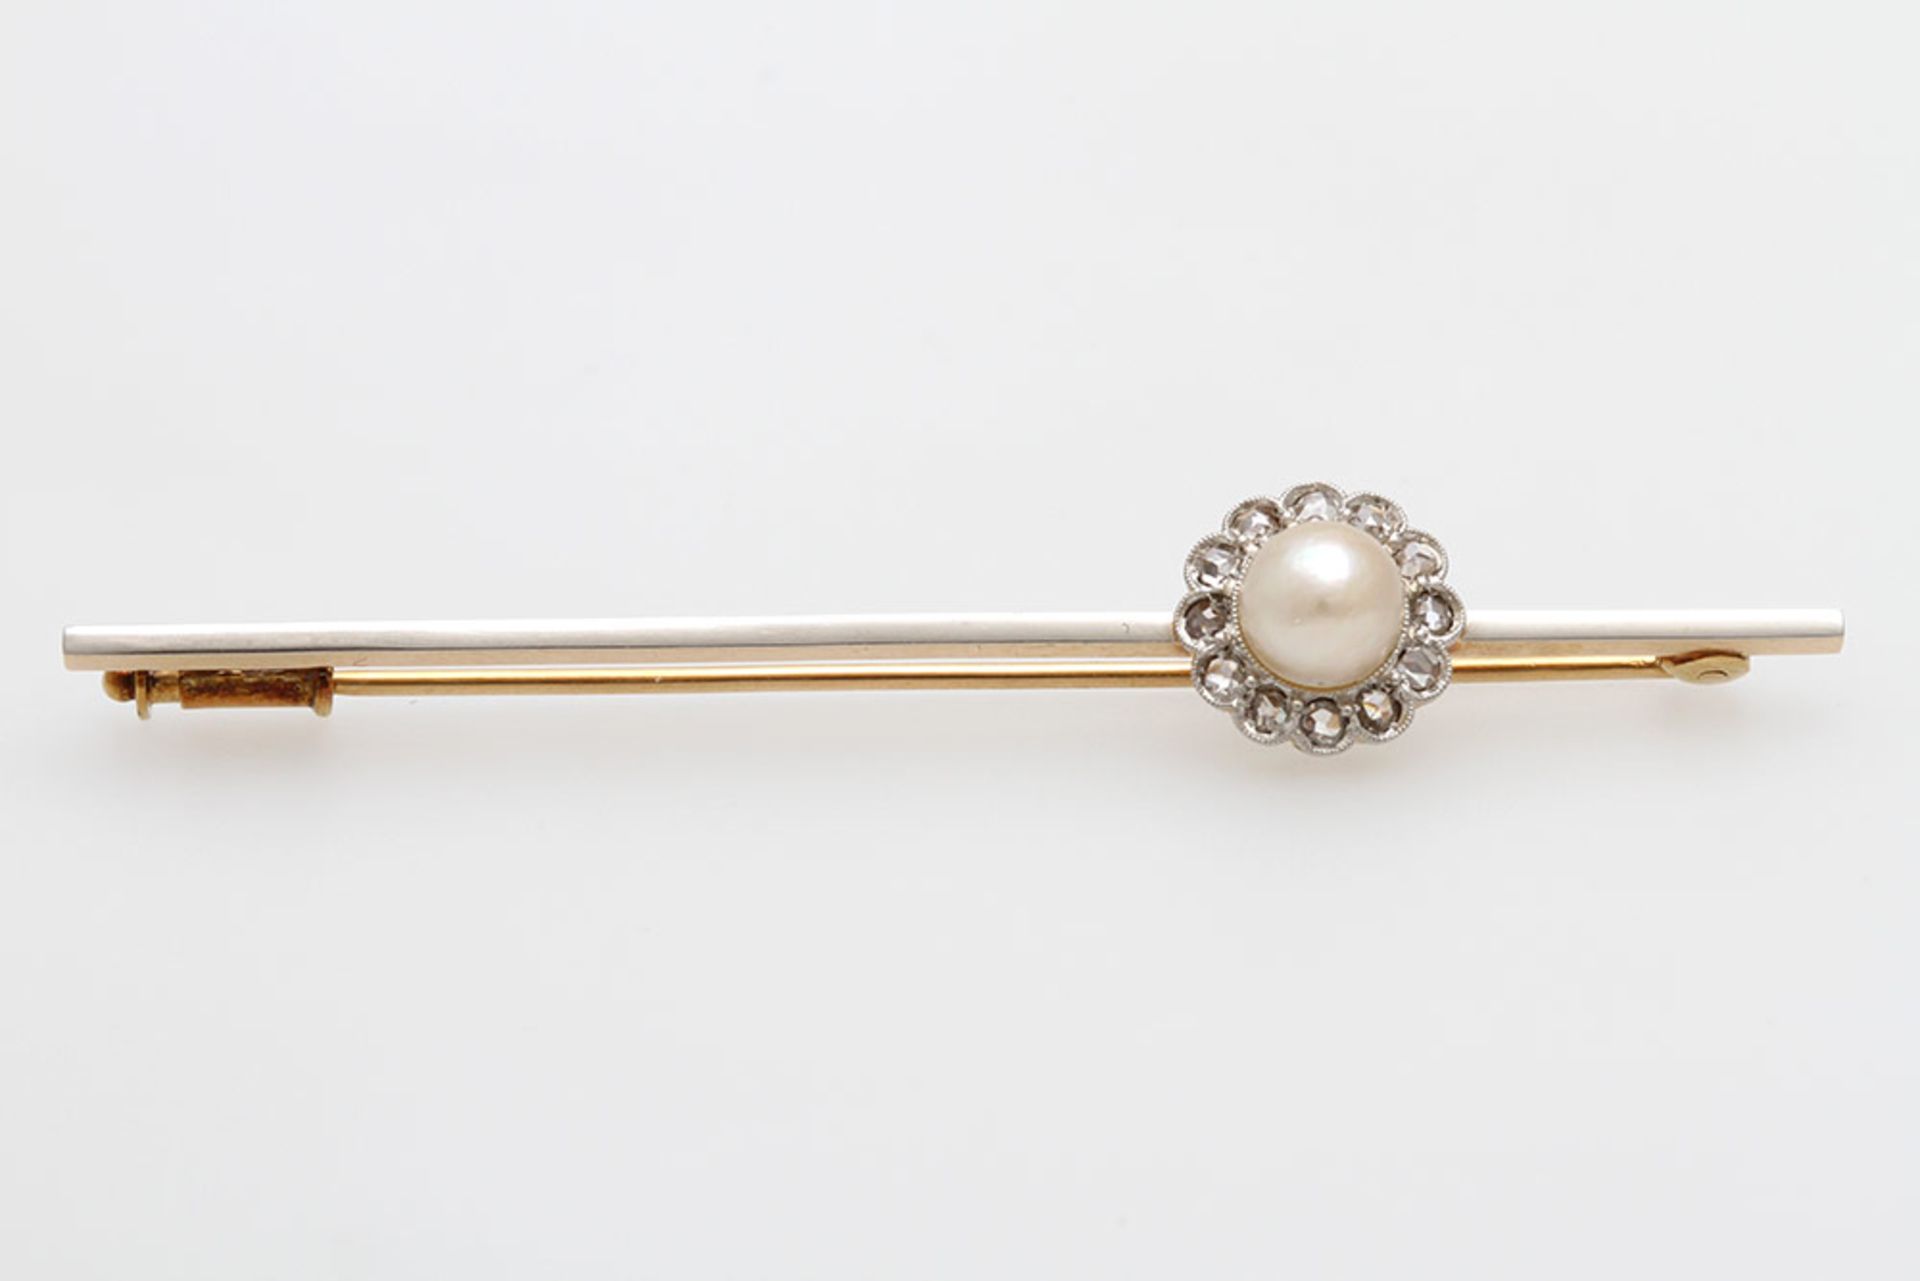 Stabbrosche besetzt mit einer Perle (wohl Naturperle) umrahmt von zwölf Diamant- Rosen zus. ca. 0,10